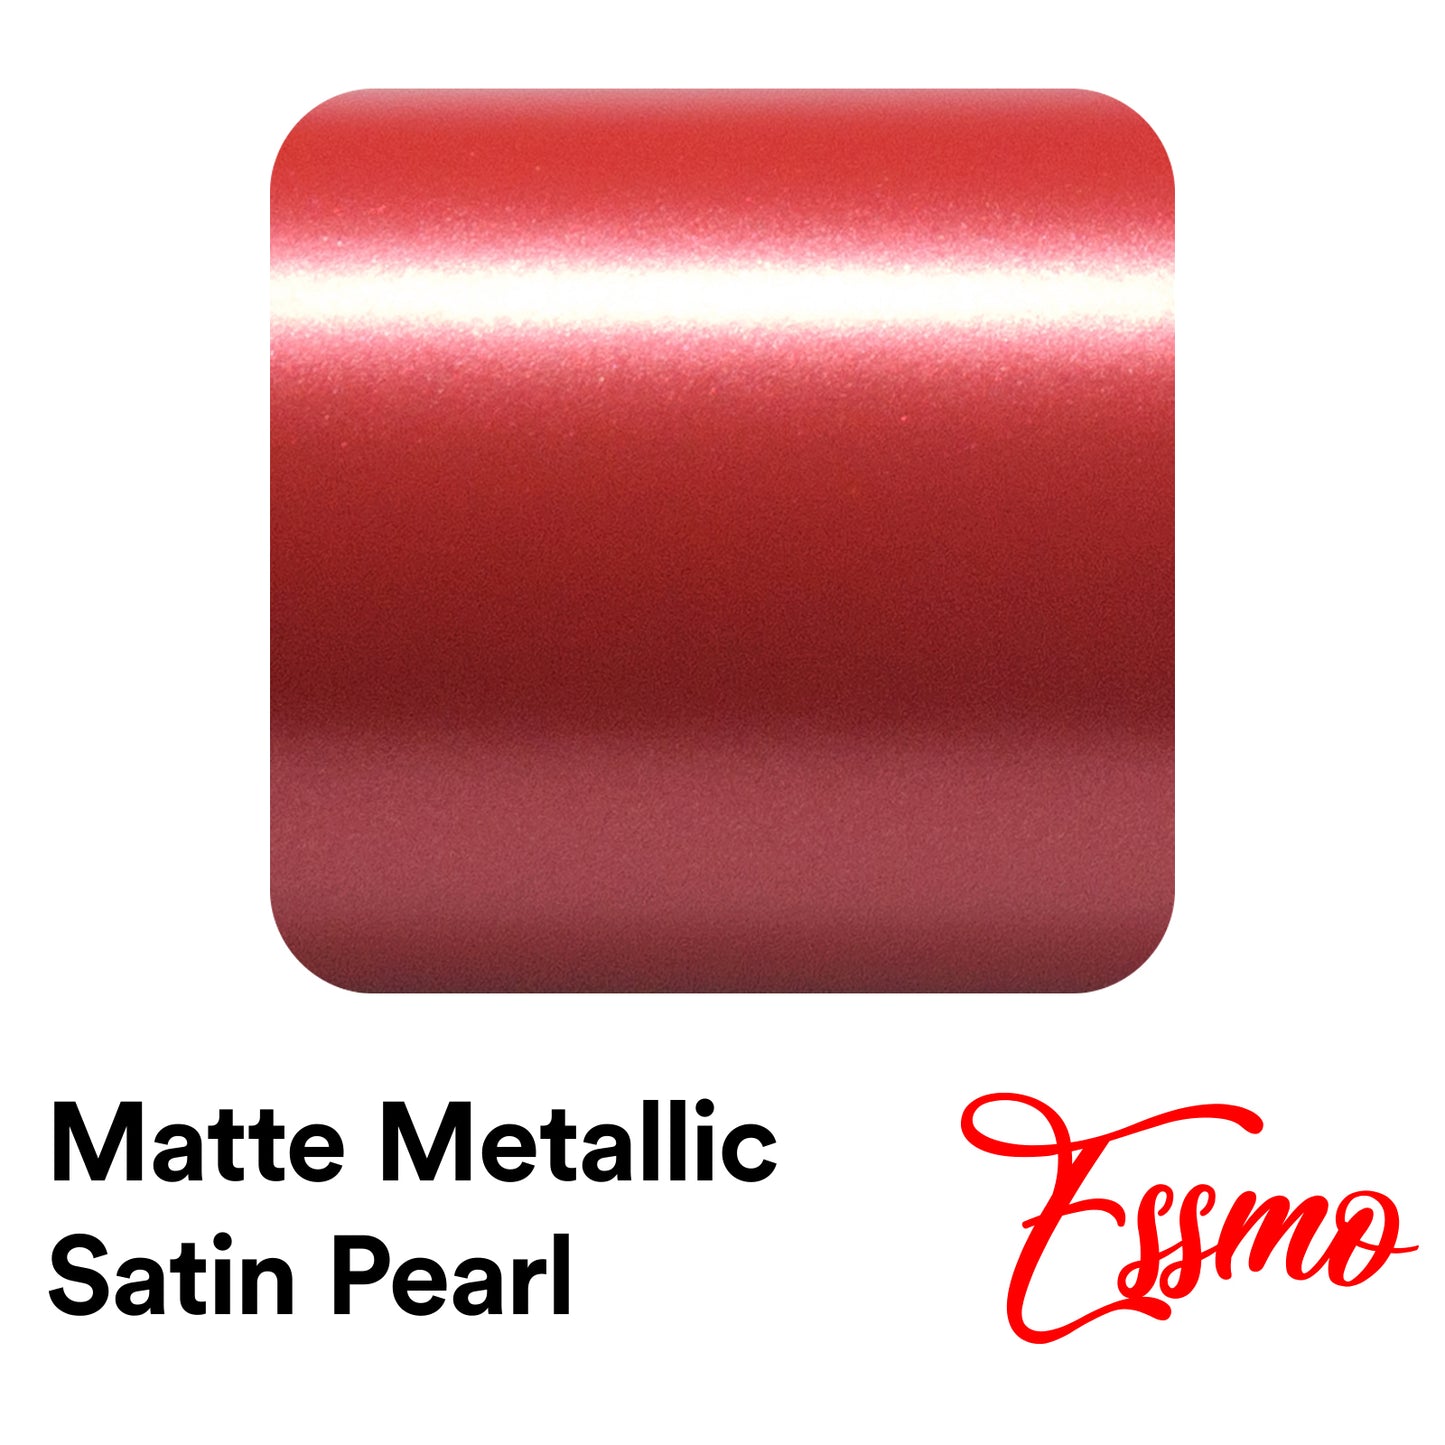 Matte Metallic Satin Pearl Red Vinyl Wrap – EzAuto Wrap